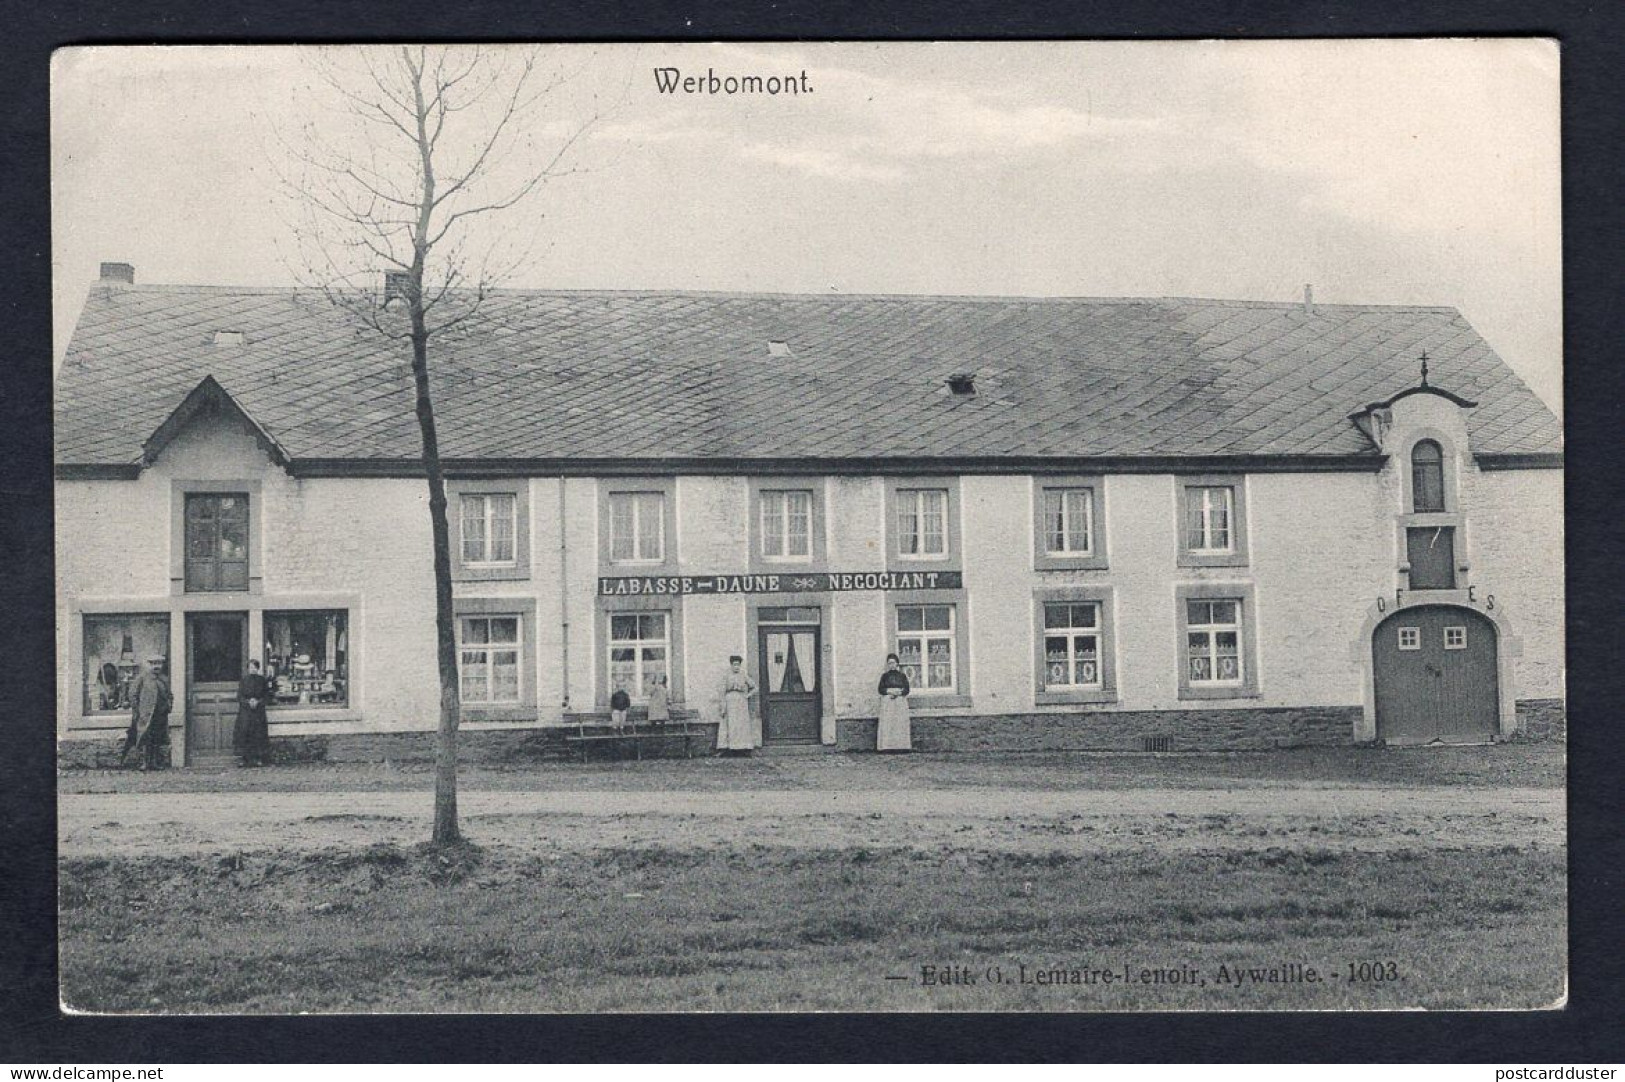 BELGIUM Werbomont 1910s Magasin Labasse-Daune. Store. Old Postcard (h2066) - Ferrières